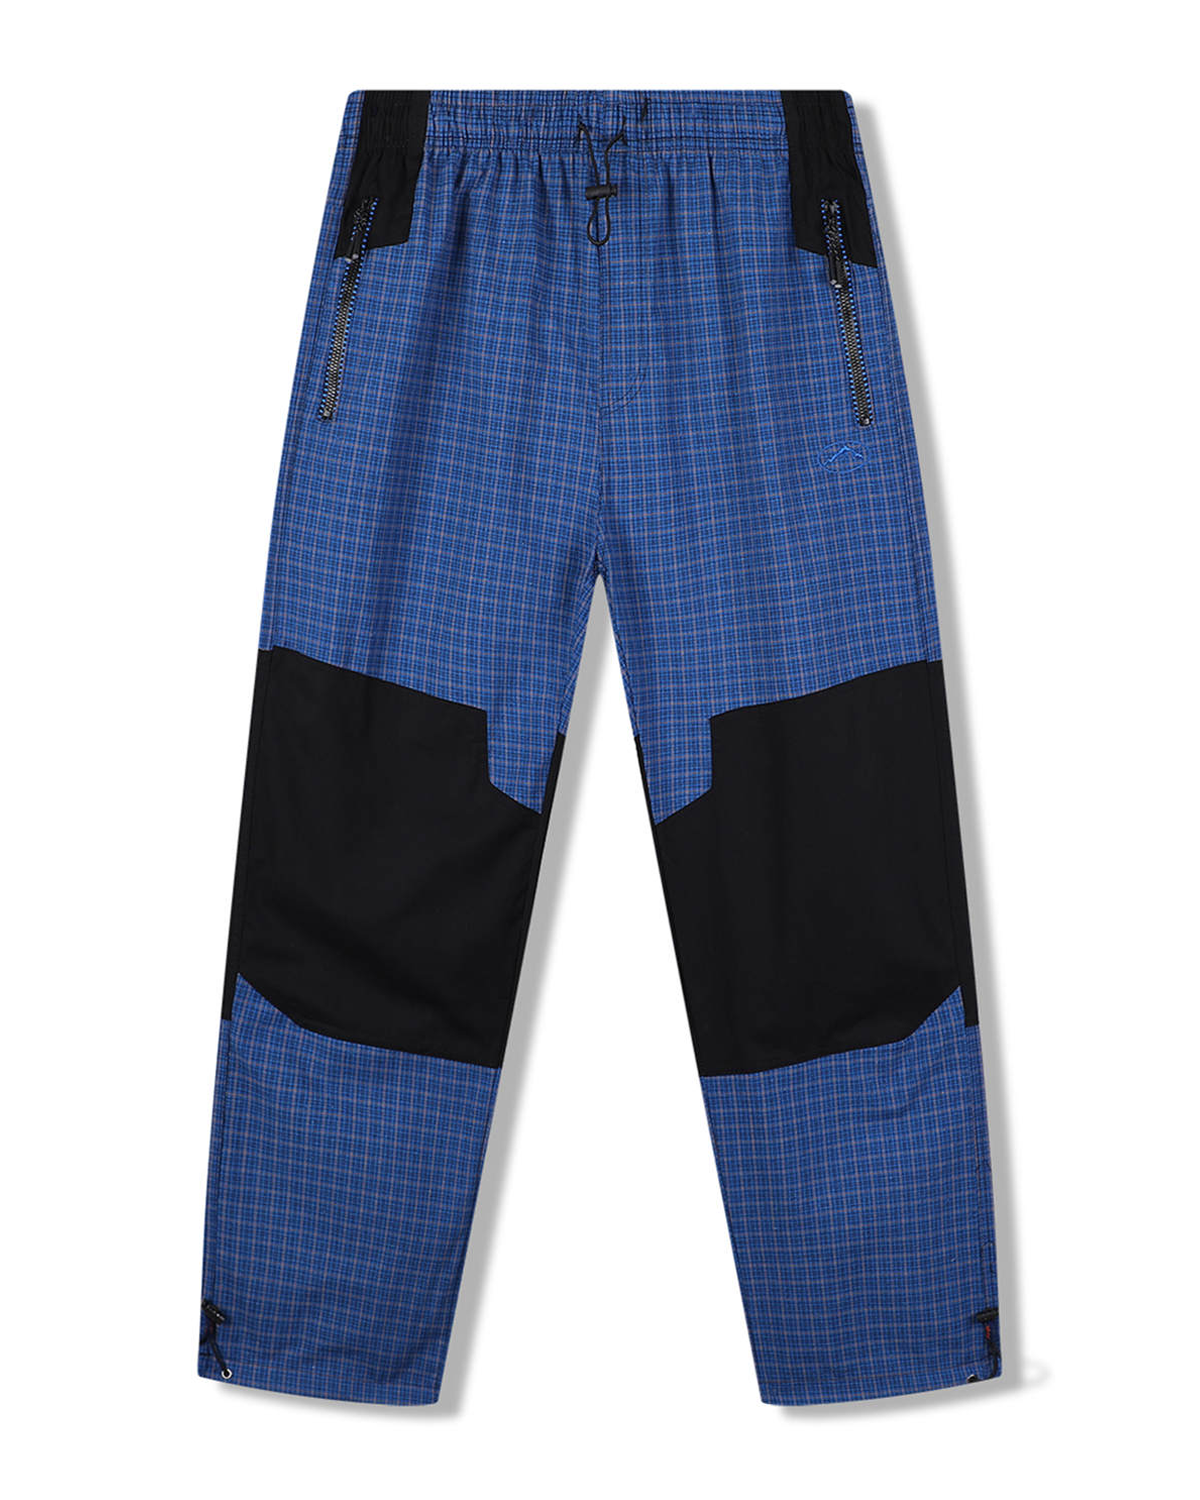 Pánské plátěné kalhoty - KUGO FK7611, modrá Barva: Modrá, Velikost: XXL